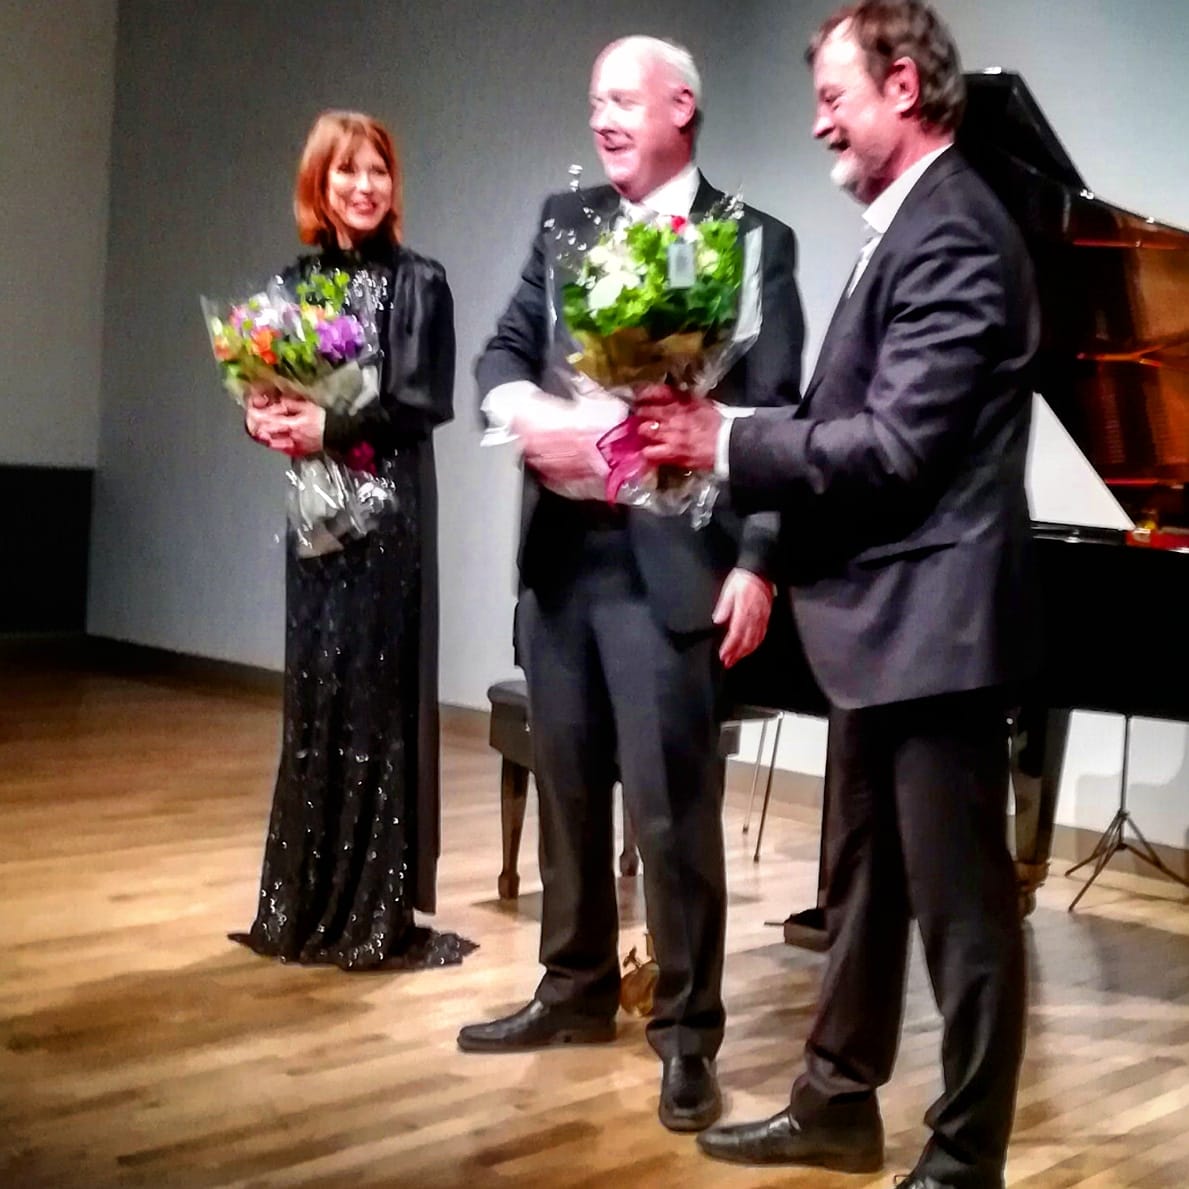 デンマーク人ピアニストKatrine Gislinge氏とデンマーク人の現代音楽の作曲家Bent Sørensen氏💕二人をお祝いするスヴェイネ大使。